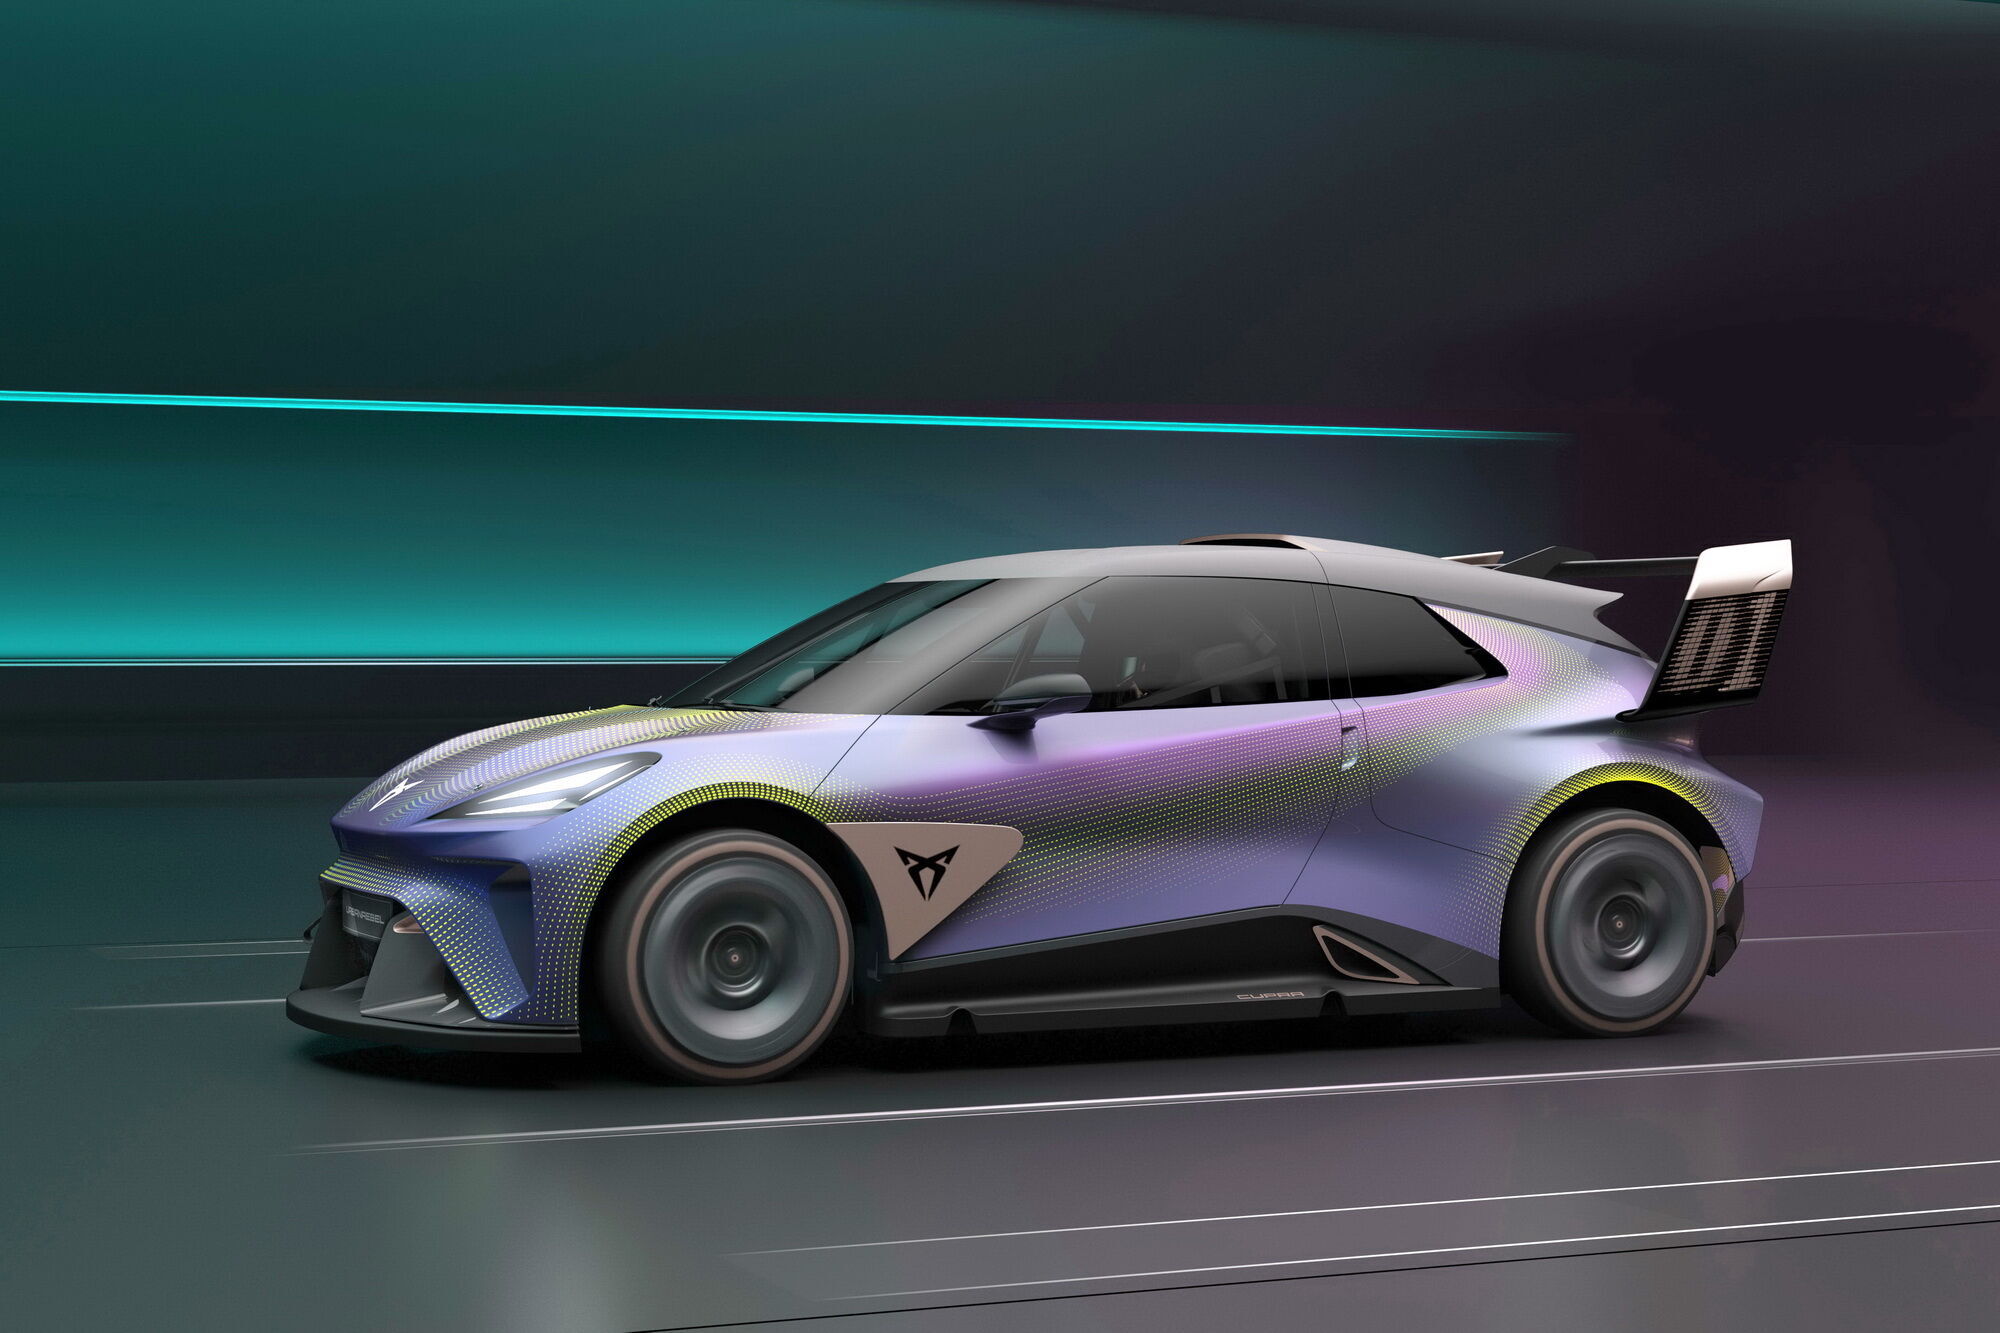 Автомобіль дозволяє отримати перше враження про нову модель на електротязі, дебют якої запланований на 2025 рік